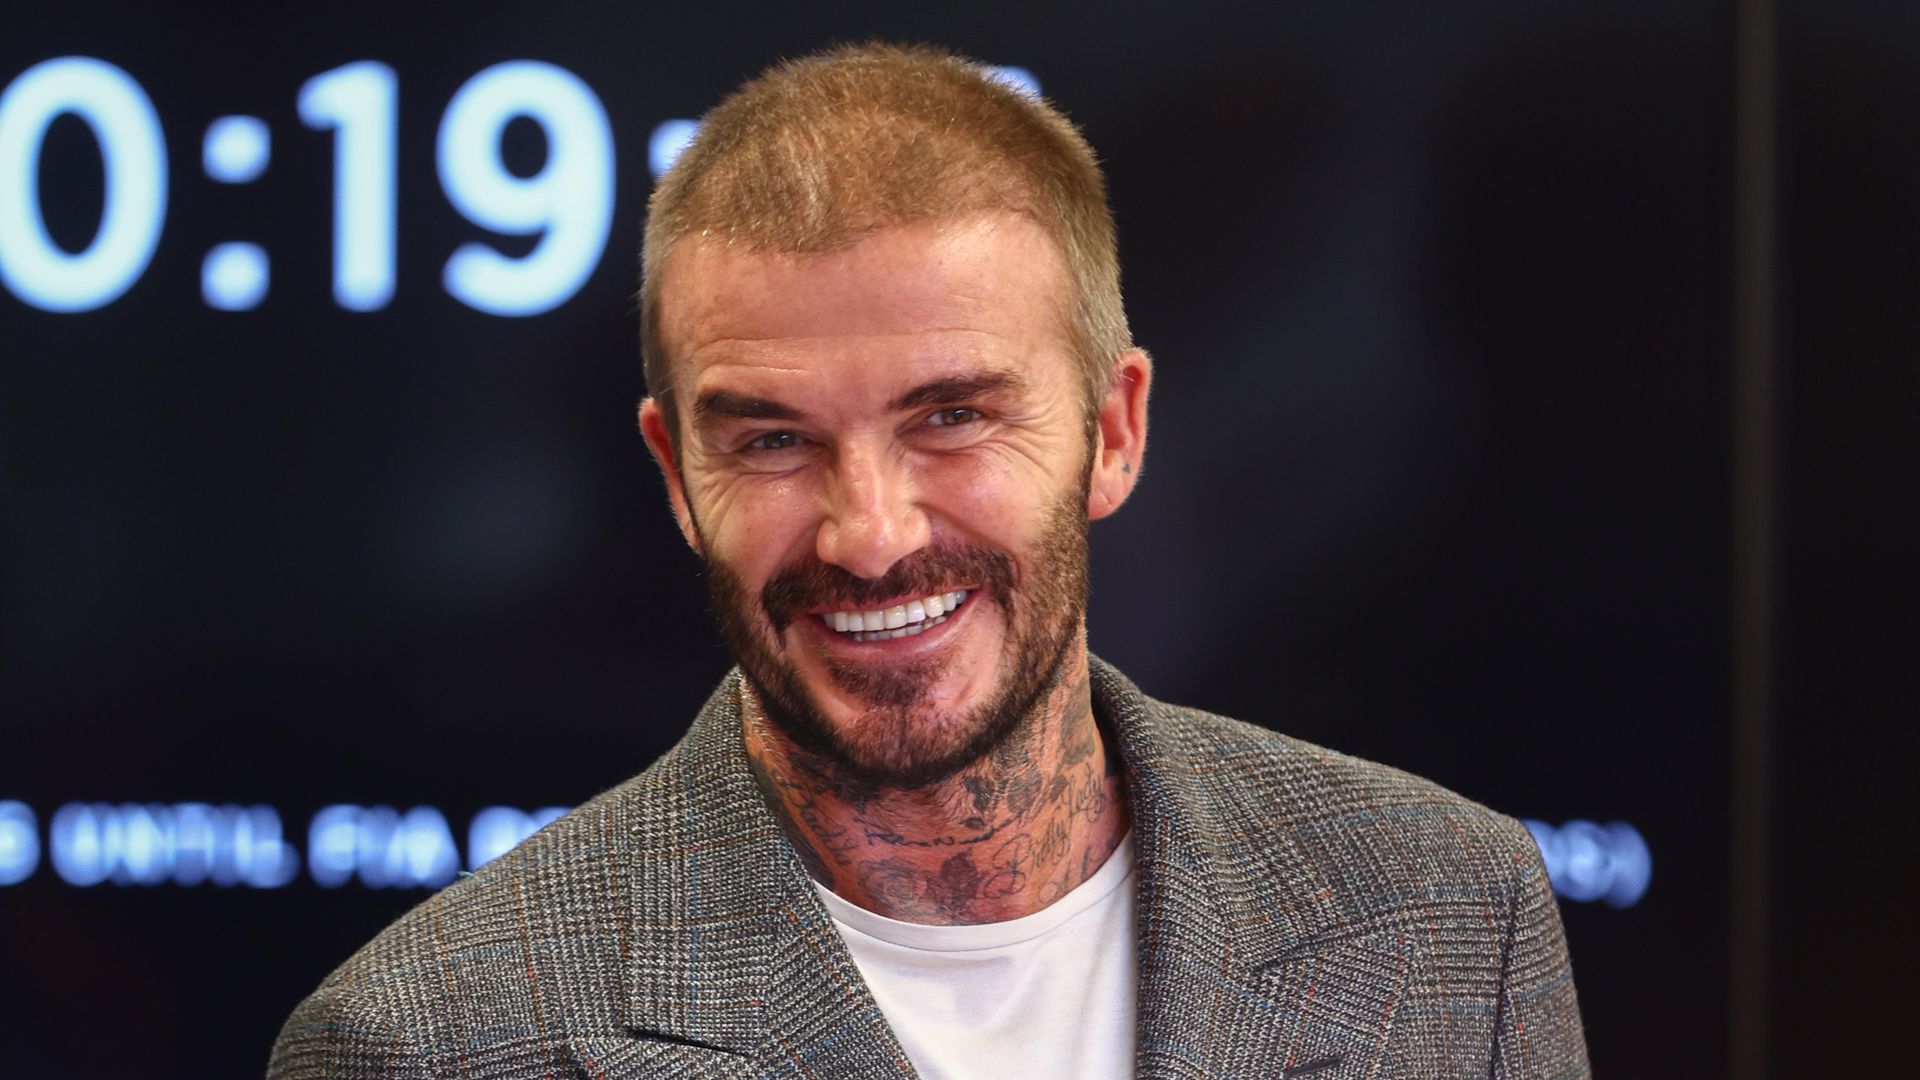 David Beckham sparks fan response with daring shirtless workout